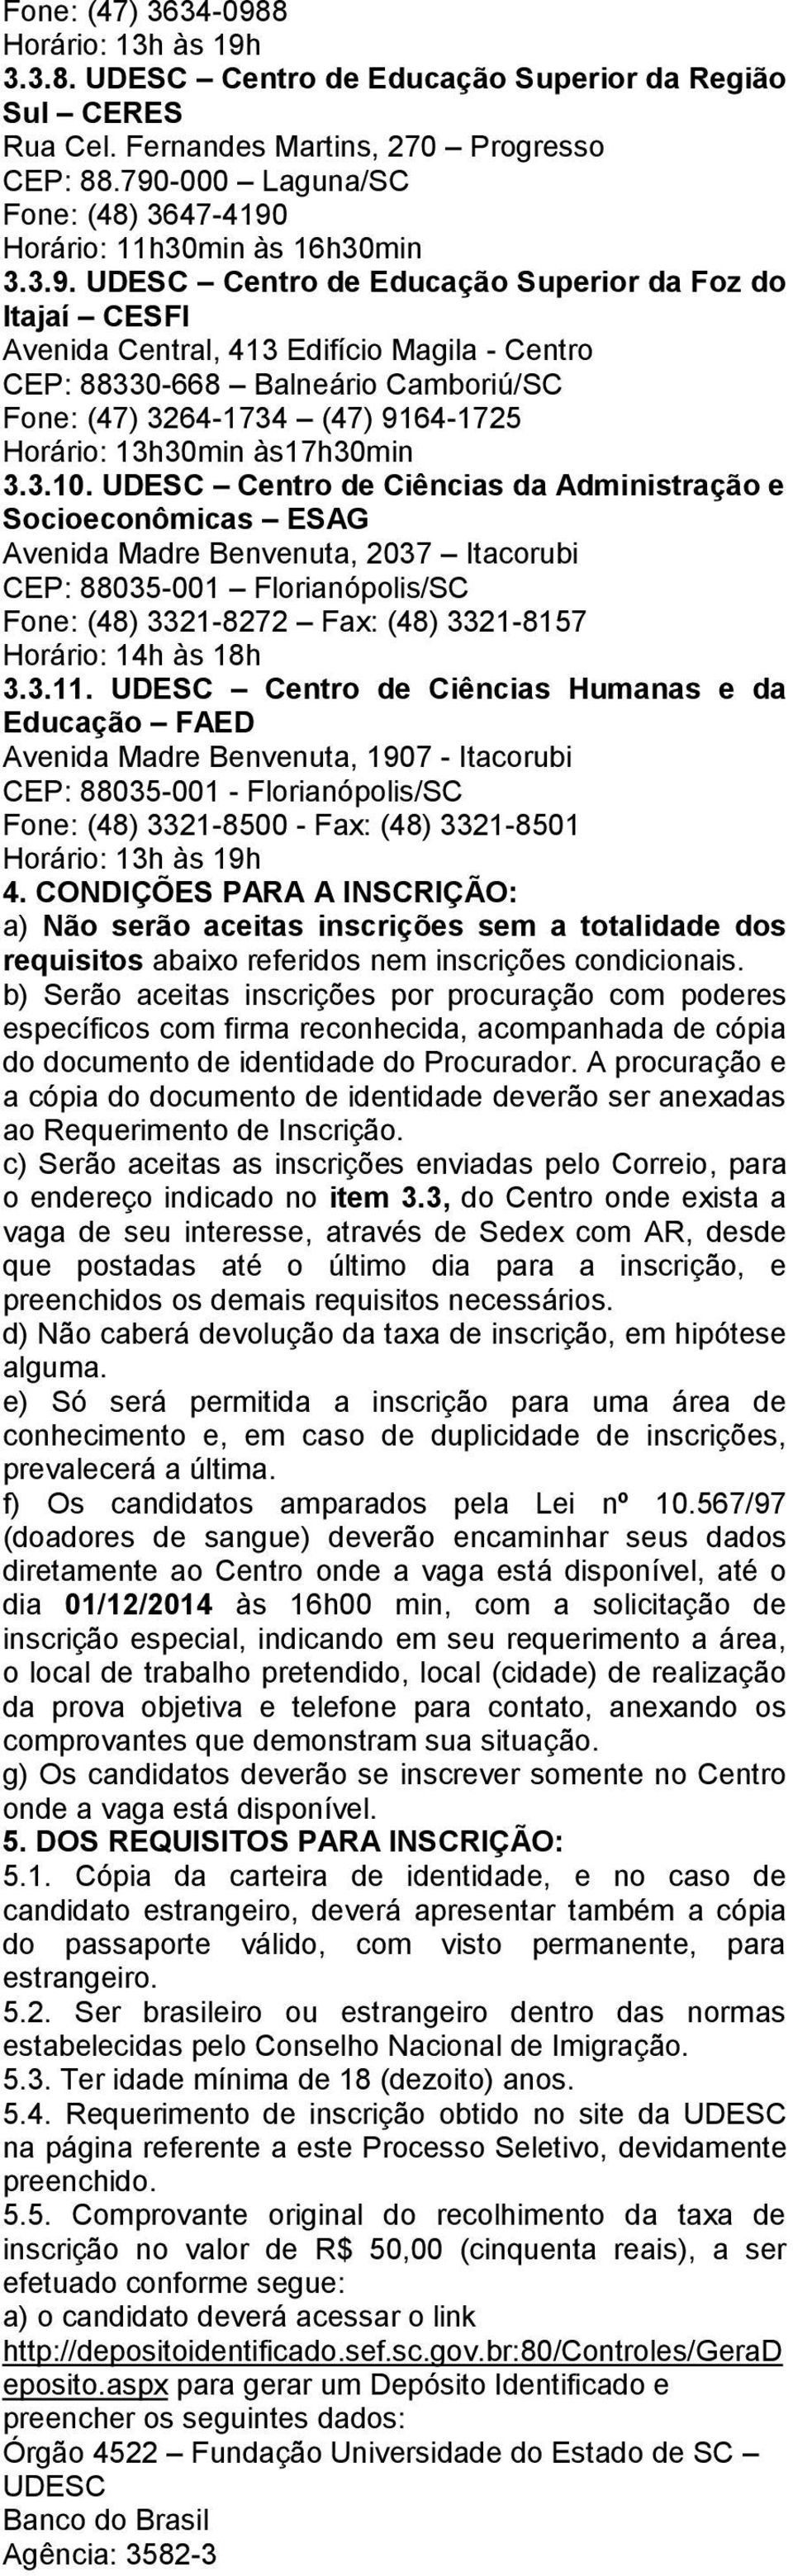 Balneário Camboriú/SC Fone: (47) 3264-1734 (47) 9164-1725 Horário: 13h30min às17h30min 3.3.10.